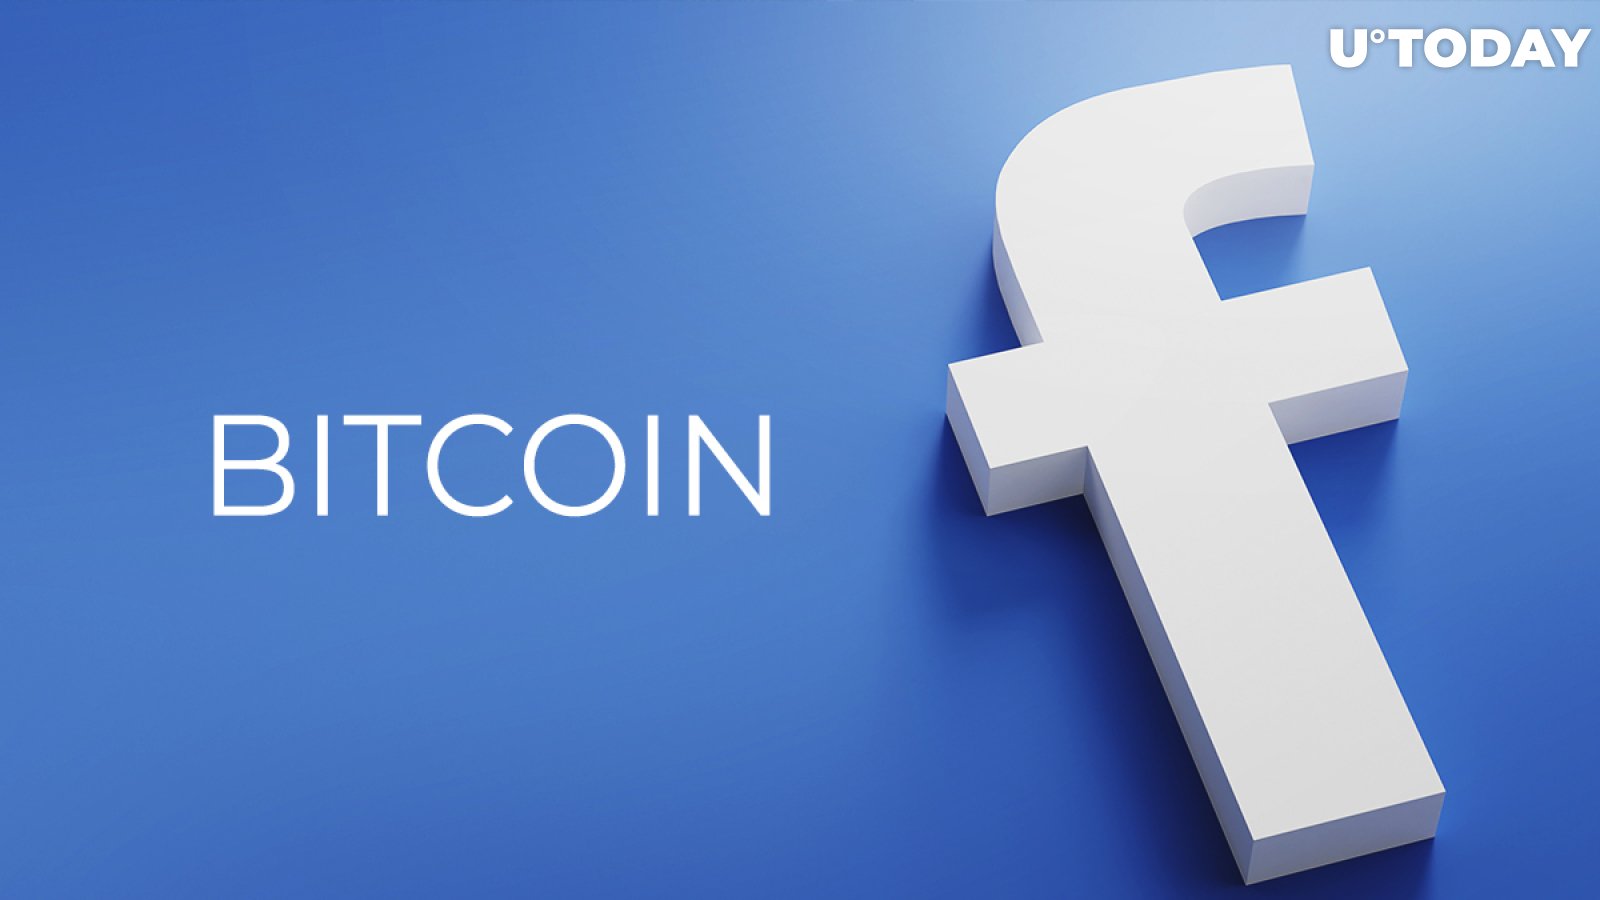 btc 2021 facebook bitcoin trading gbp